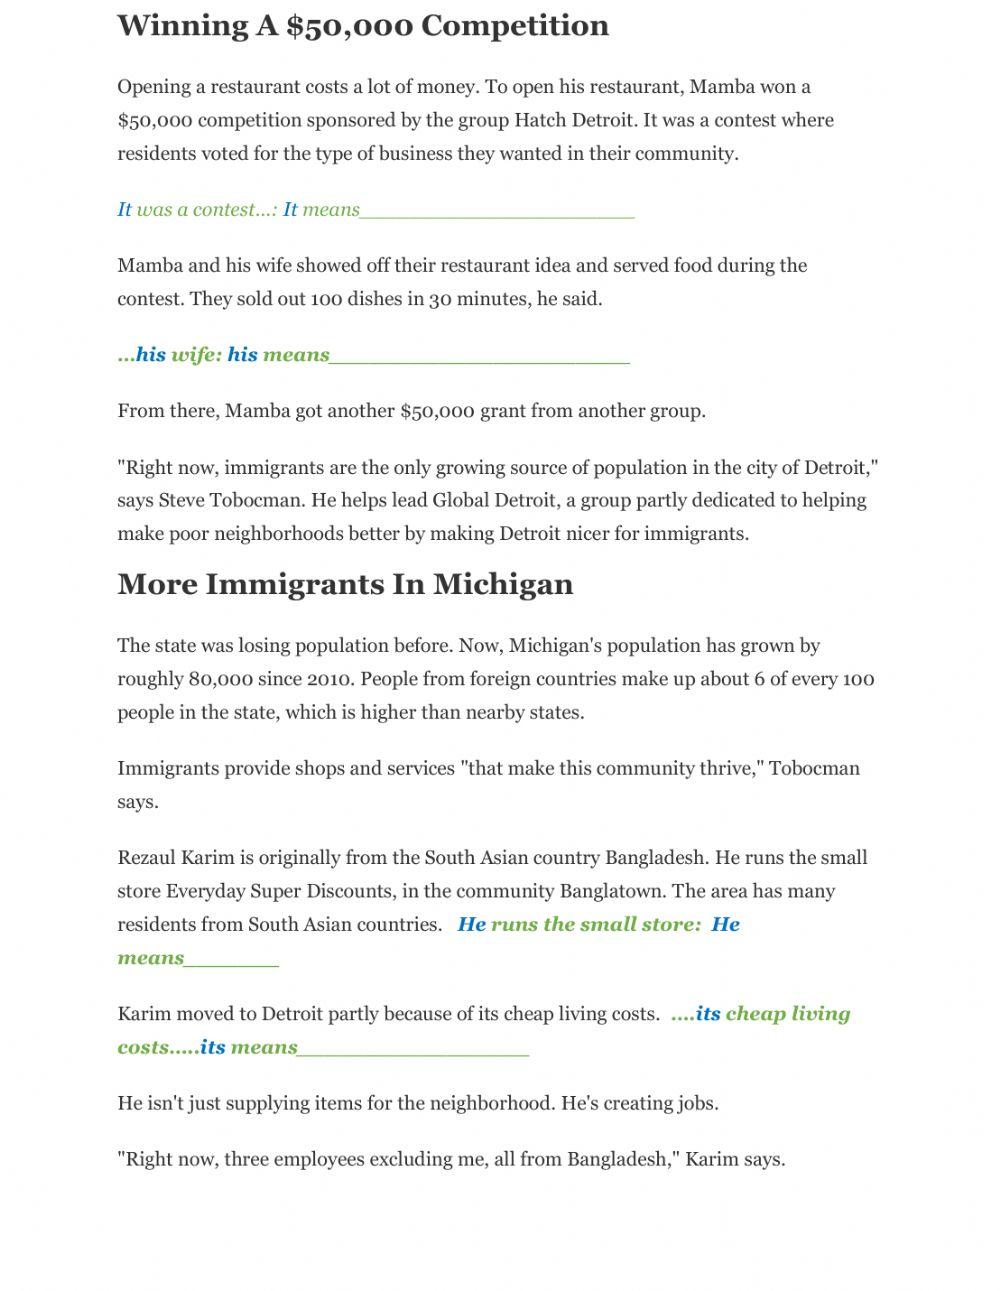 Pronouns -Immigrants Help Detroit